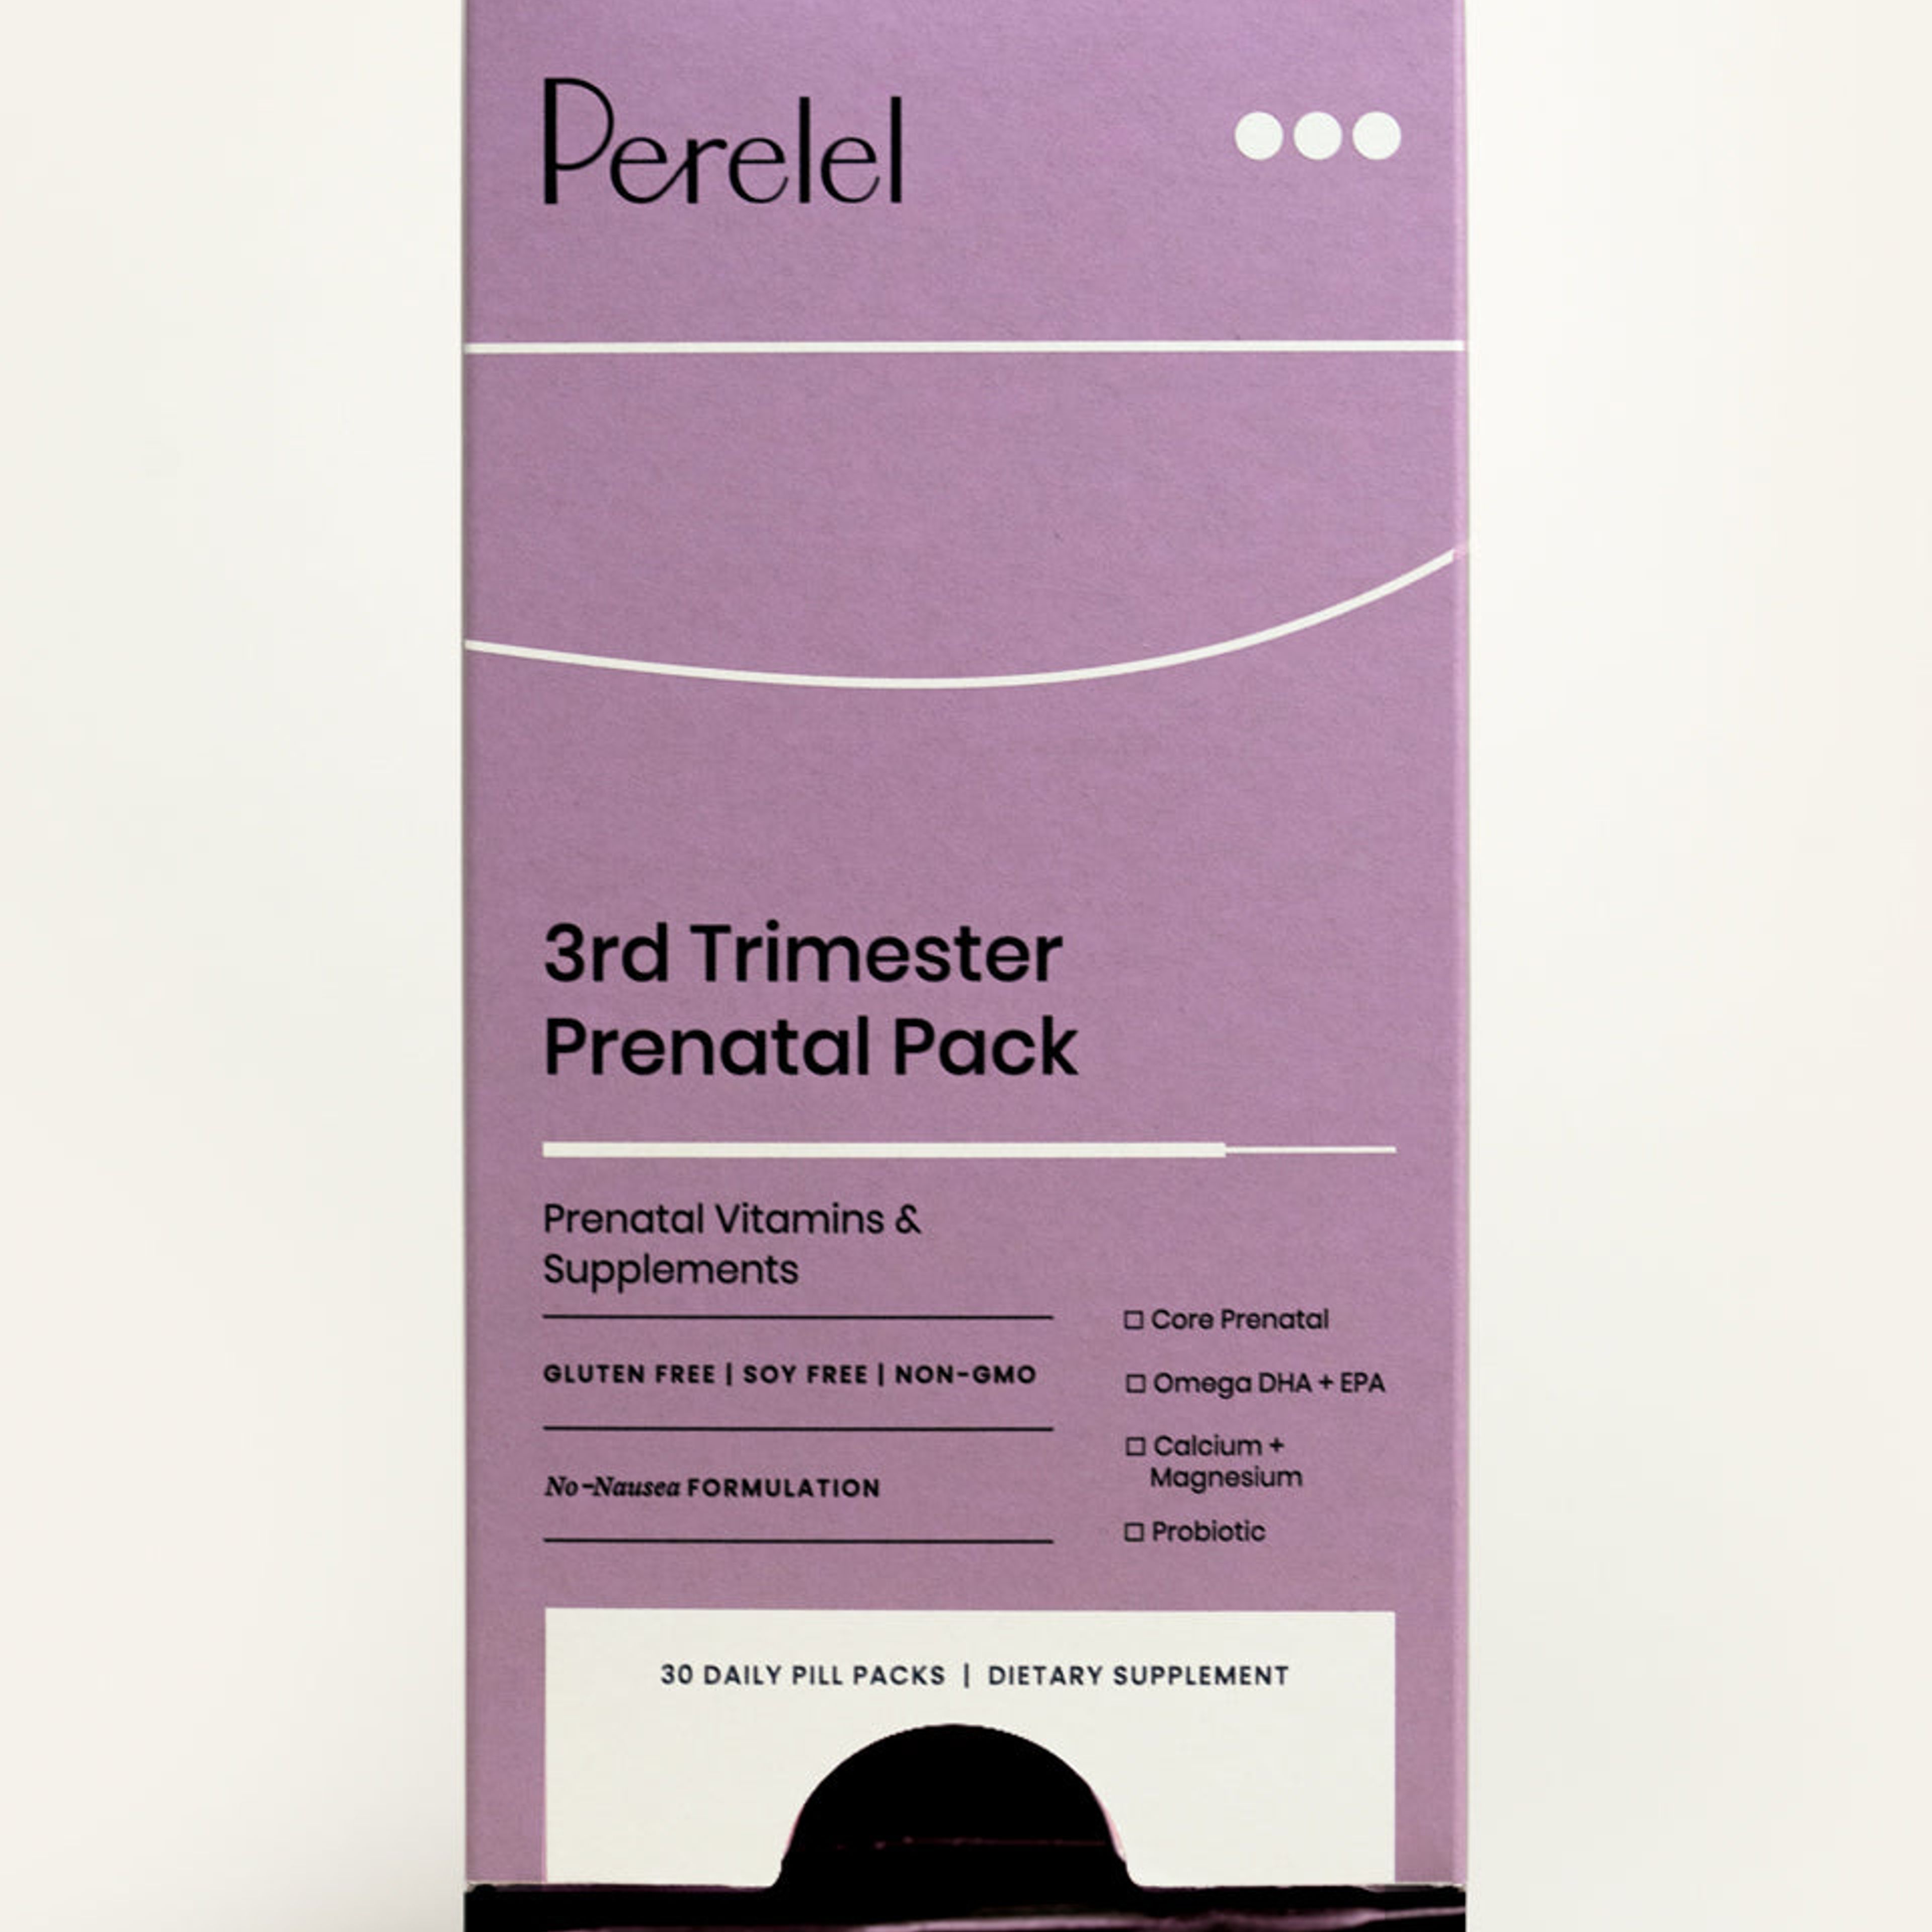 3rd Trimester Prenatal Pack